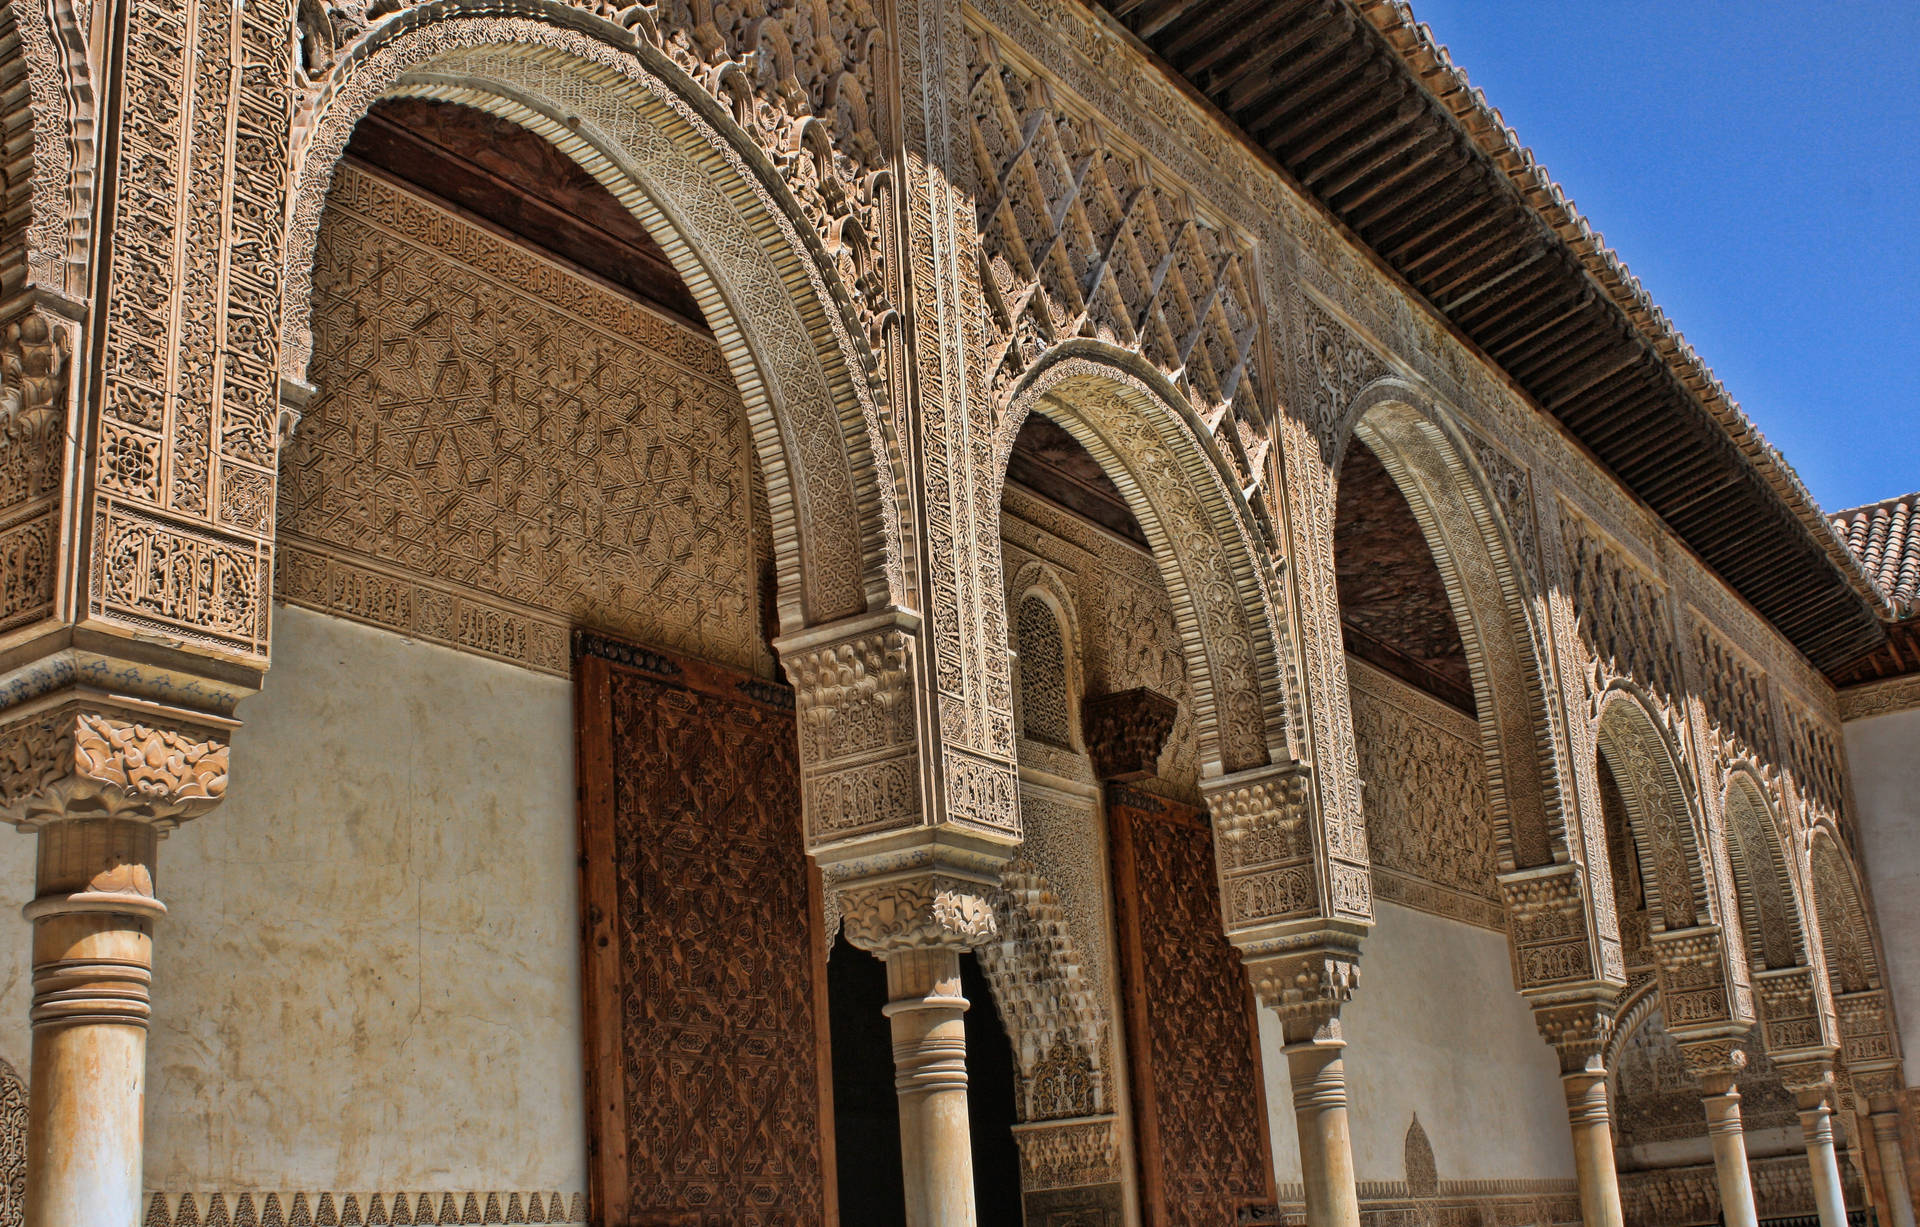 Alhambra Building Arches wallpaper er en smuk, rustik baggrund. Wallpaper